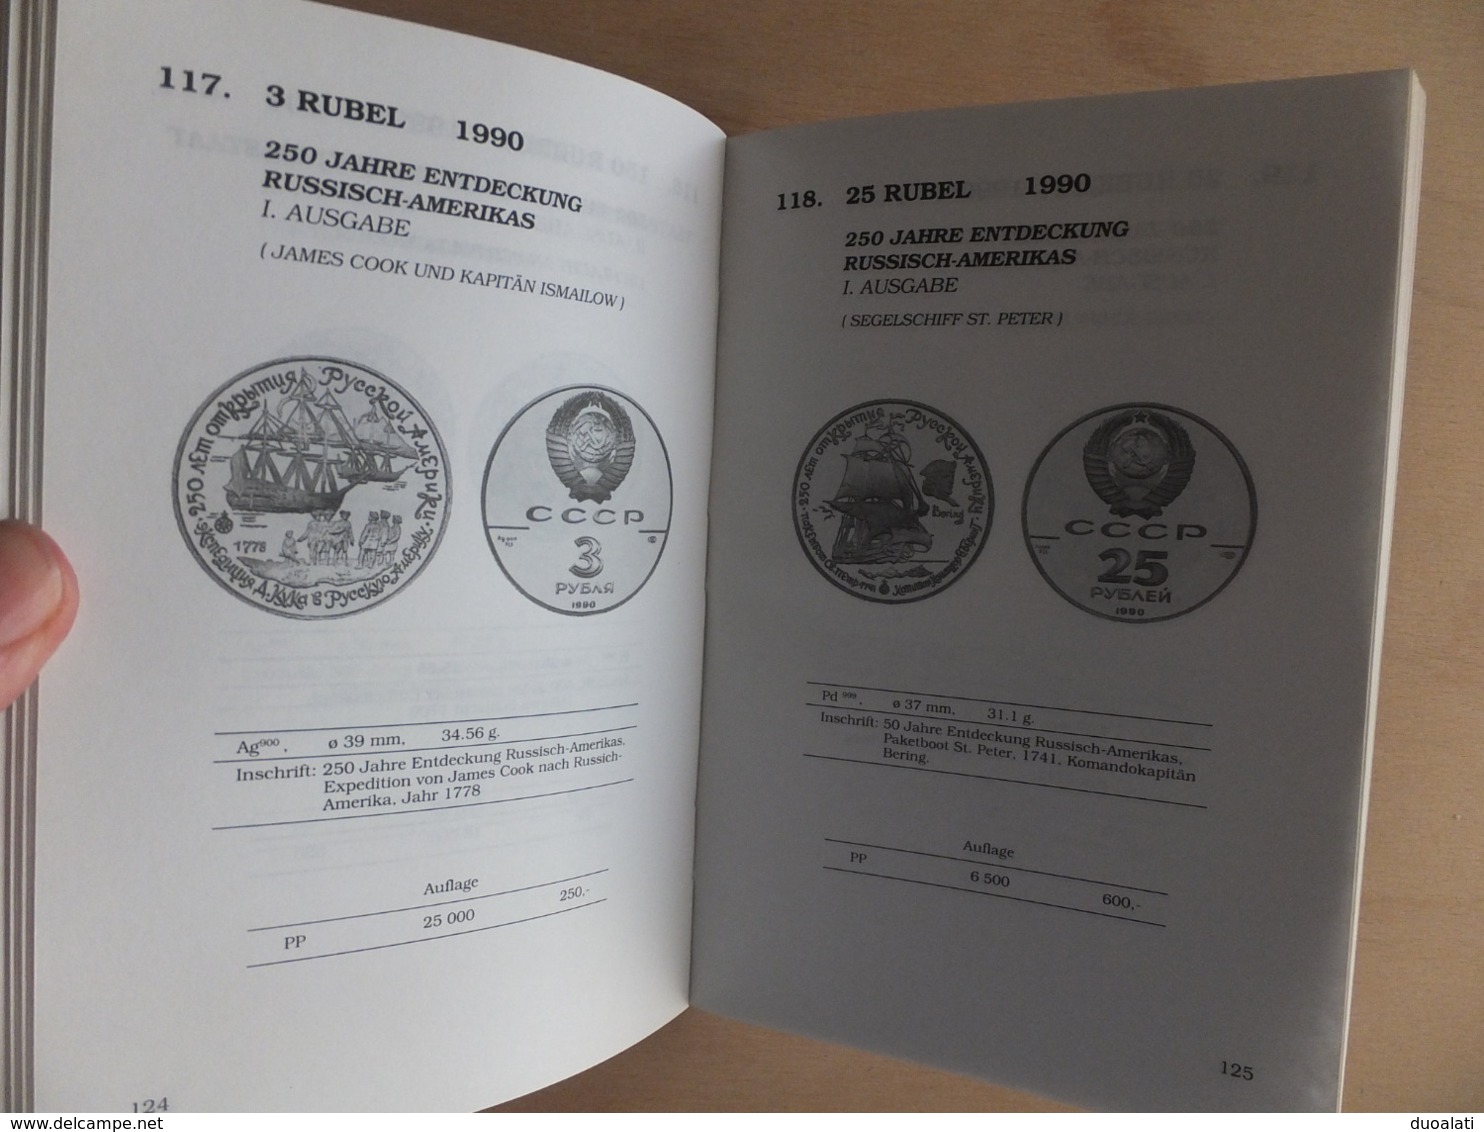 Germany Deutschland Katalog der Gedenkmünzen Sowjetunion / Russland 93/94 Coinbook